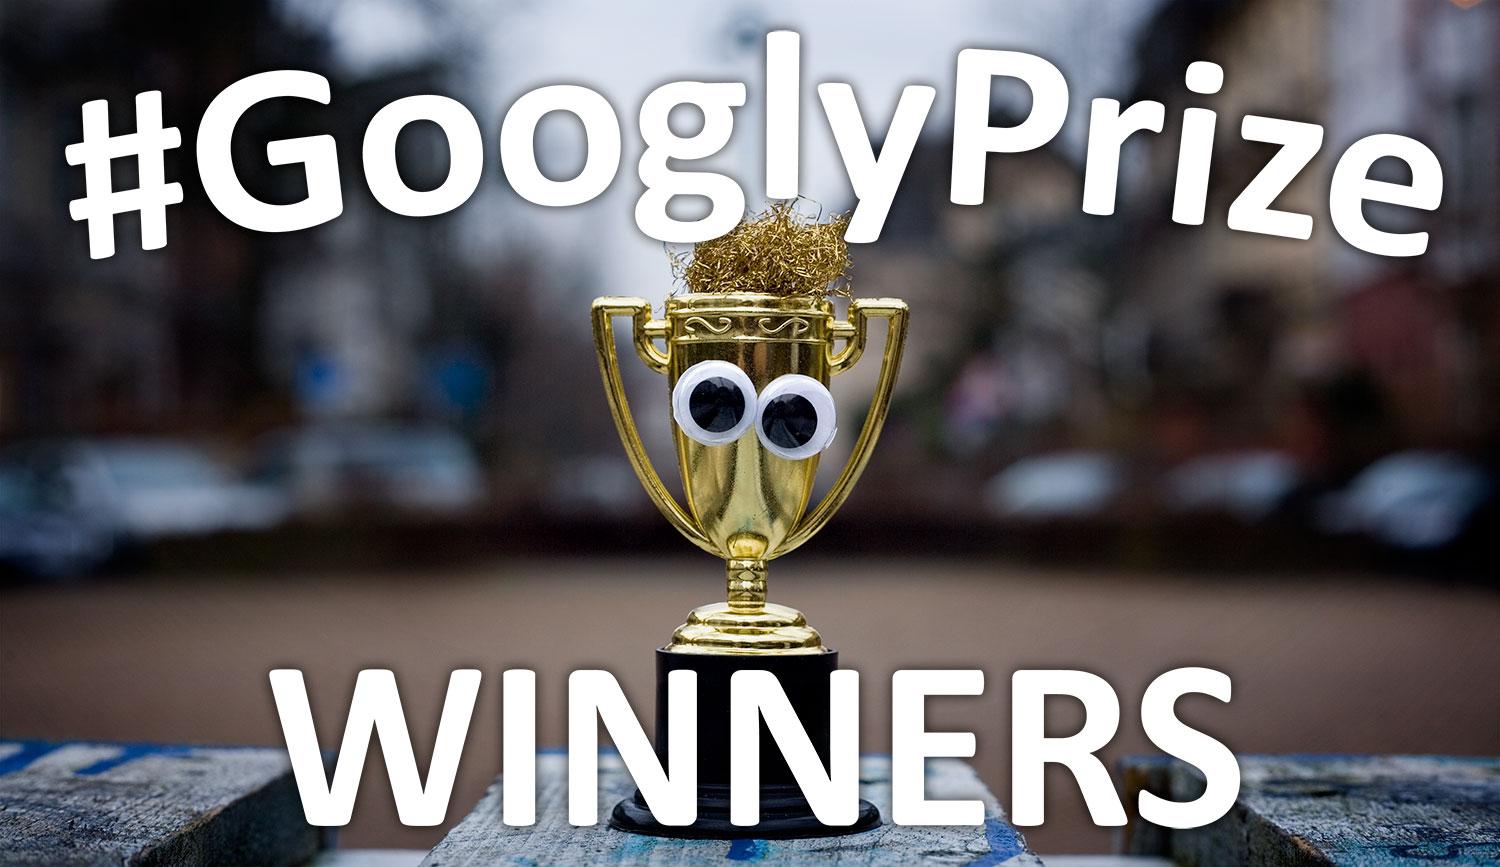 GooglyPrize Winners 28